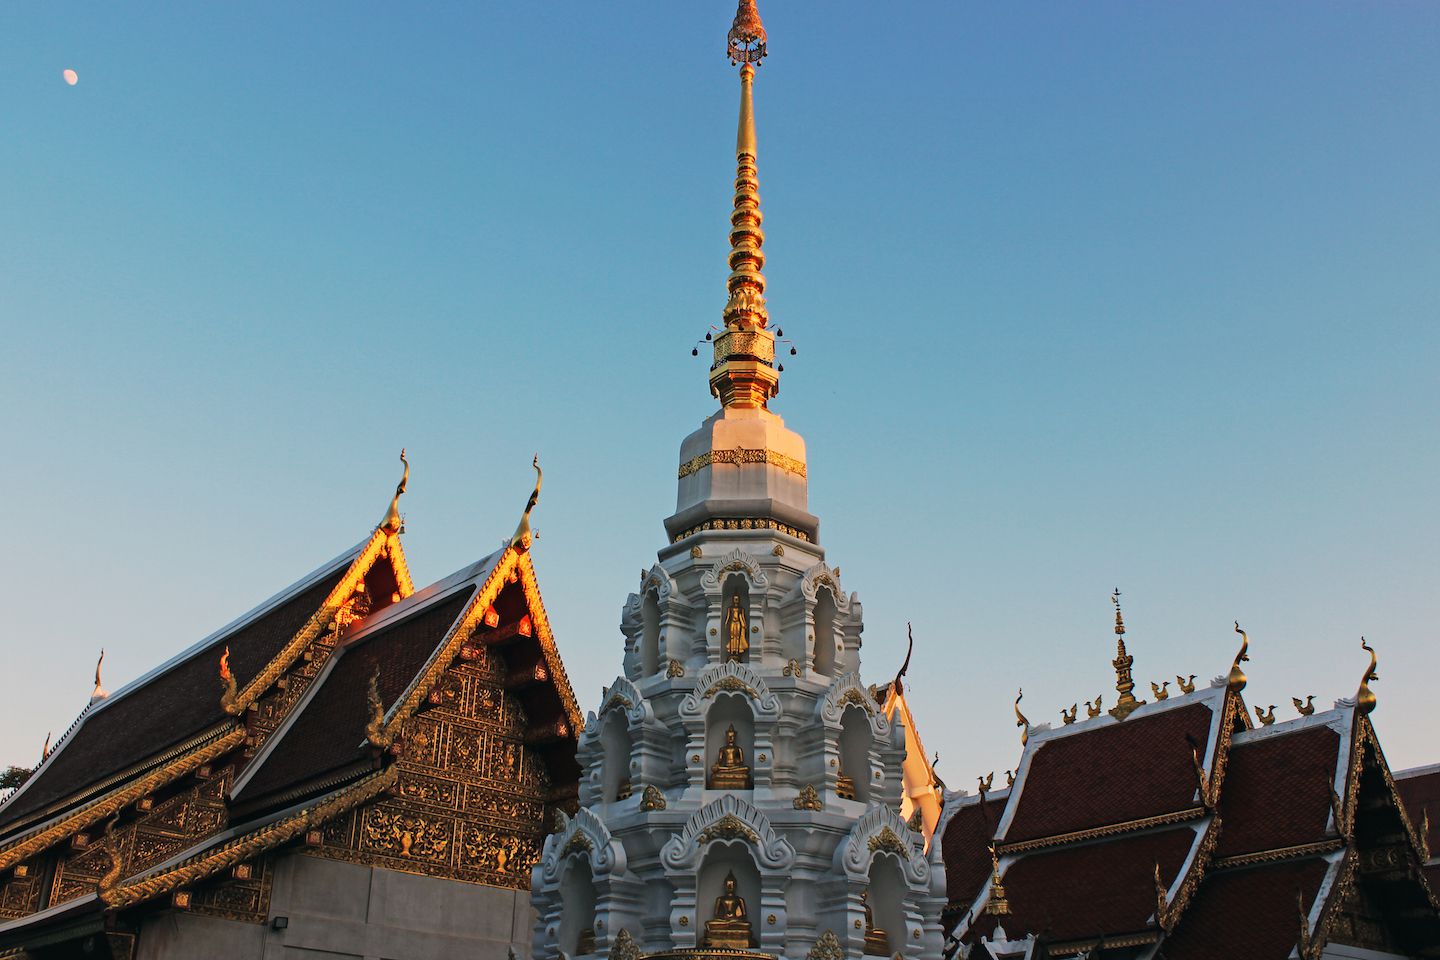 Chedi at the temples of Chiang Rai